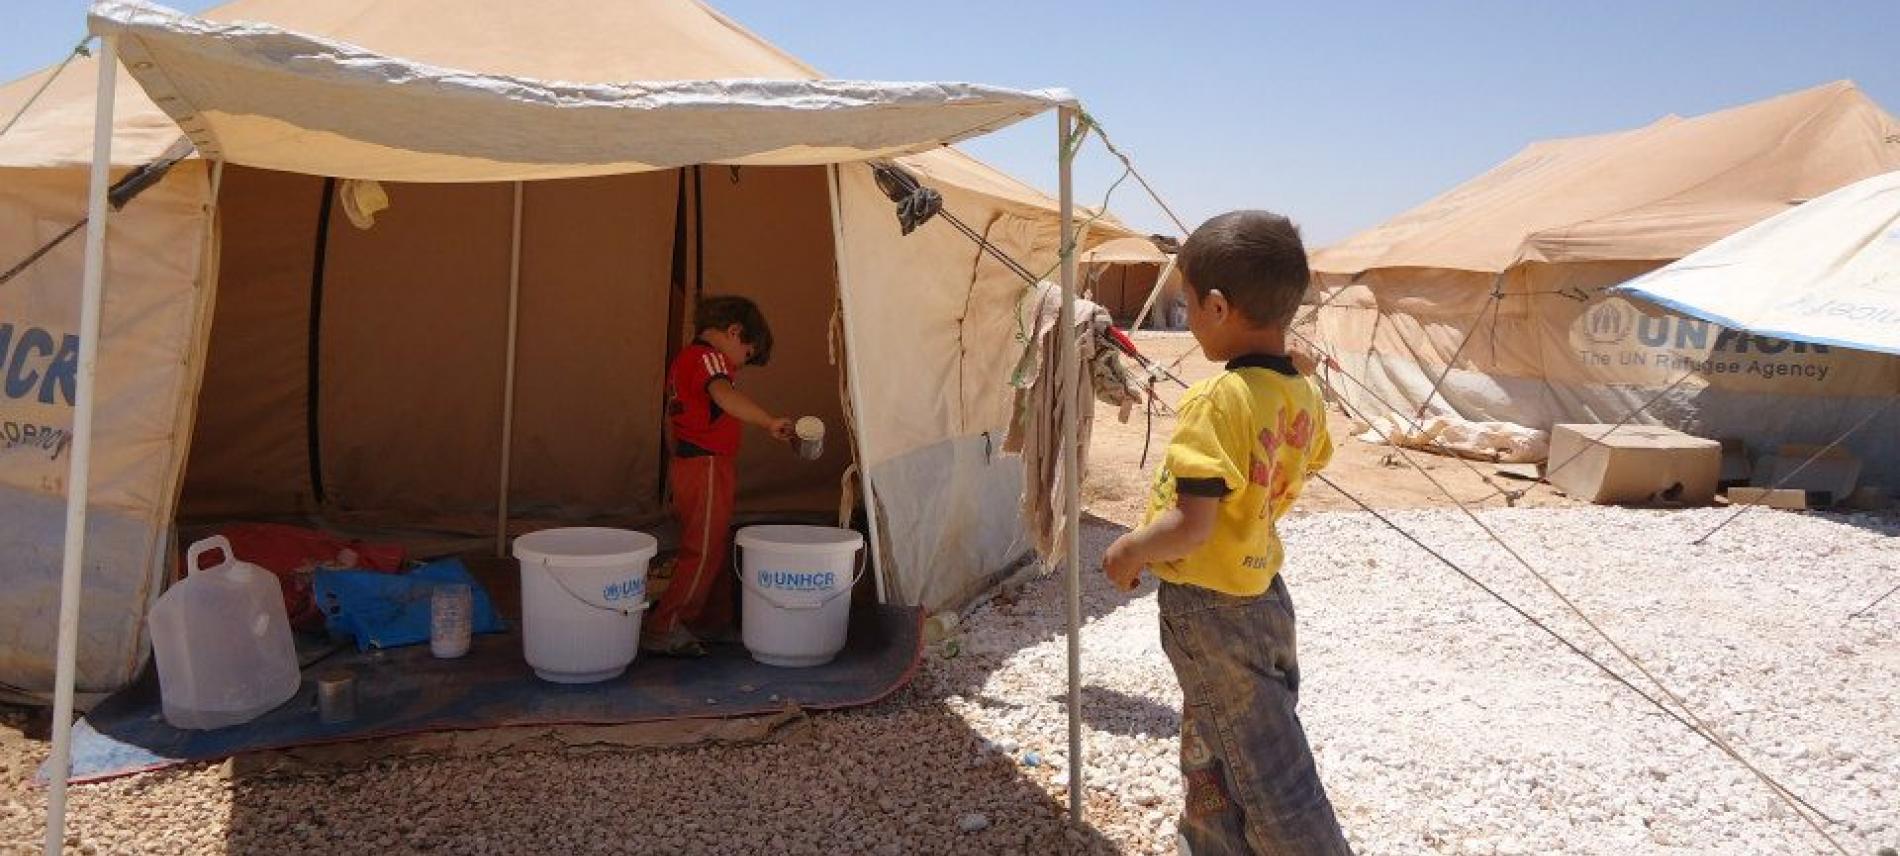 Die Flüchtlinge in den syrischen Camps sind auf humanitäre Hilfe angewiesen. Foto: Cecile Genot